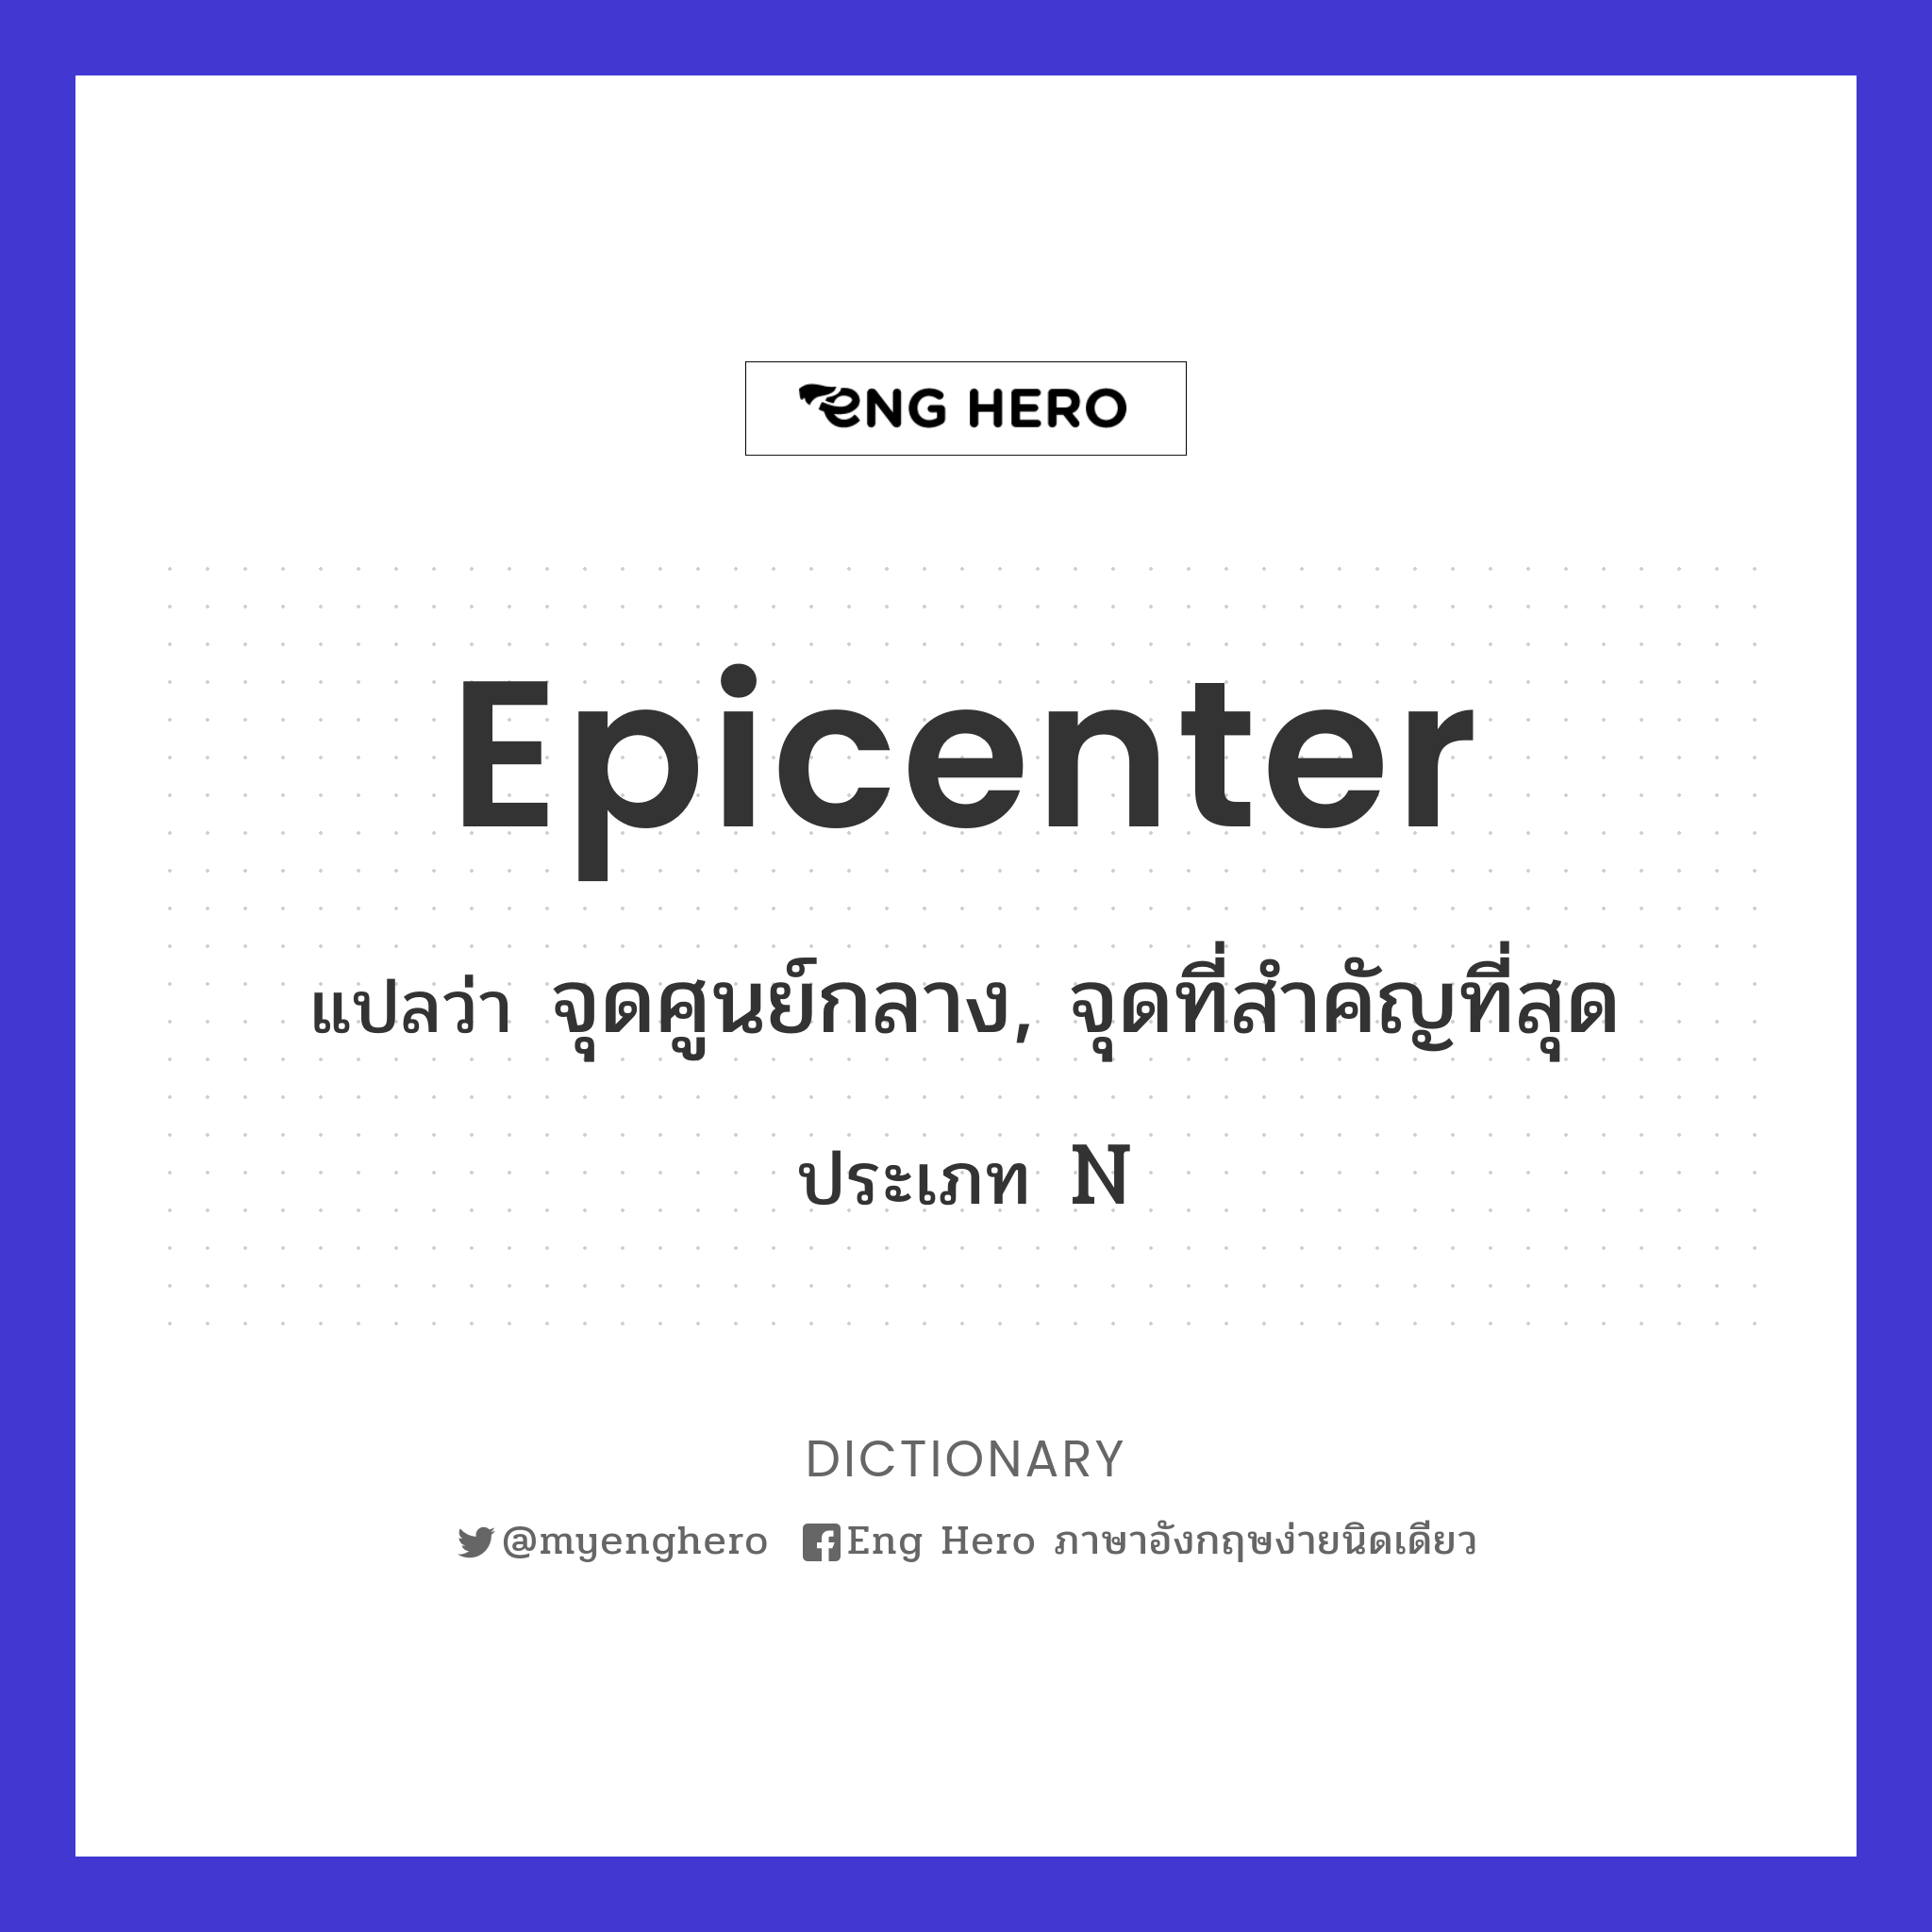 epicenter